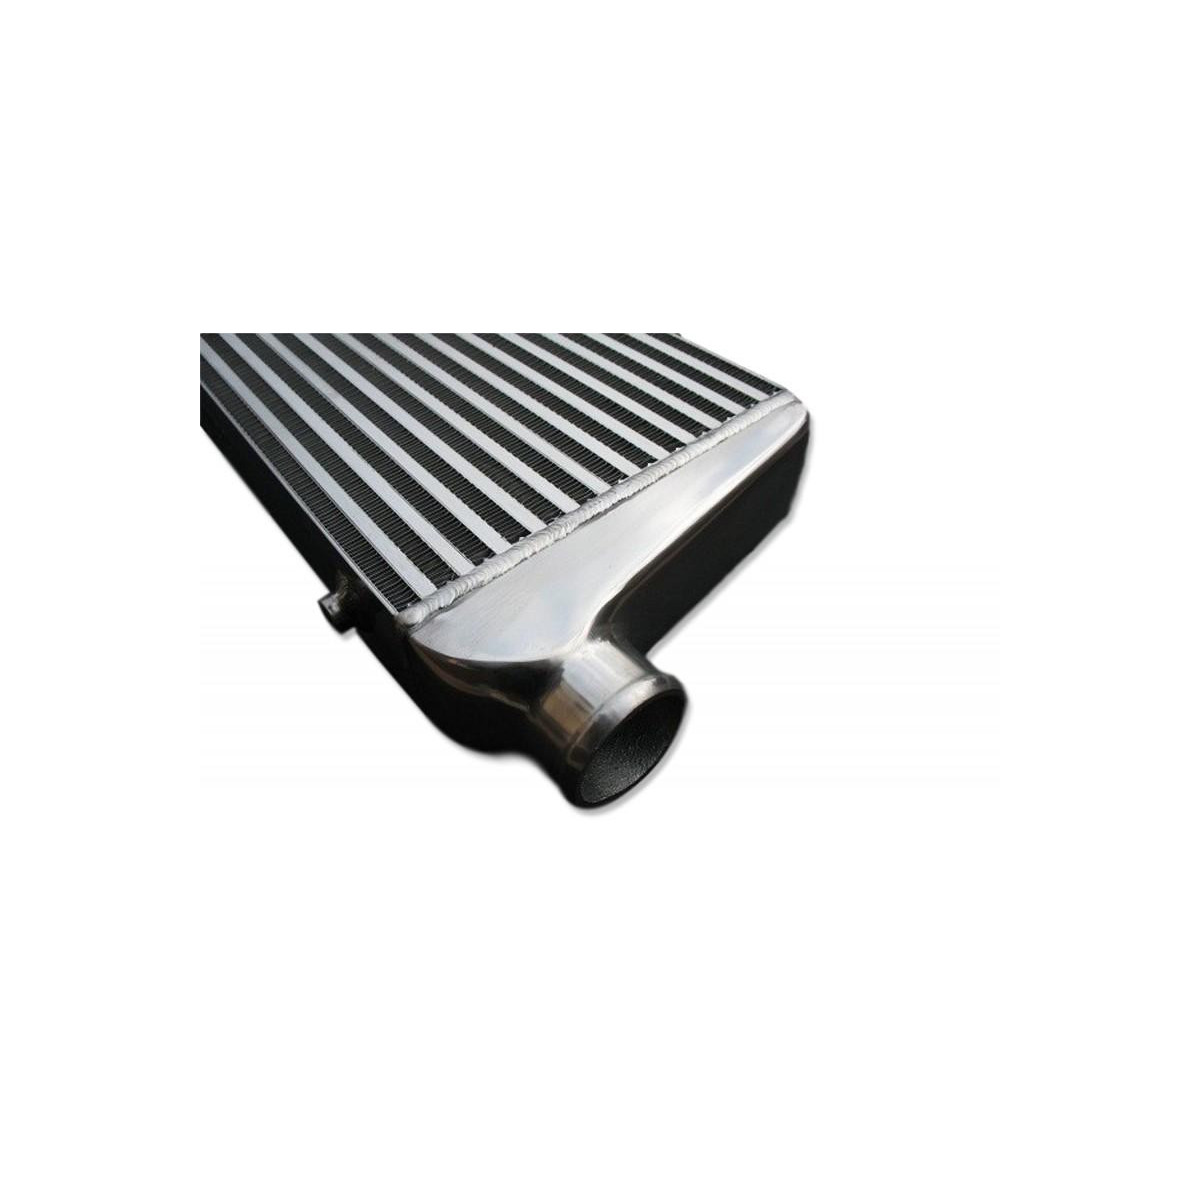 Intercooler 550x230x65mm - Intercooler : Standard